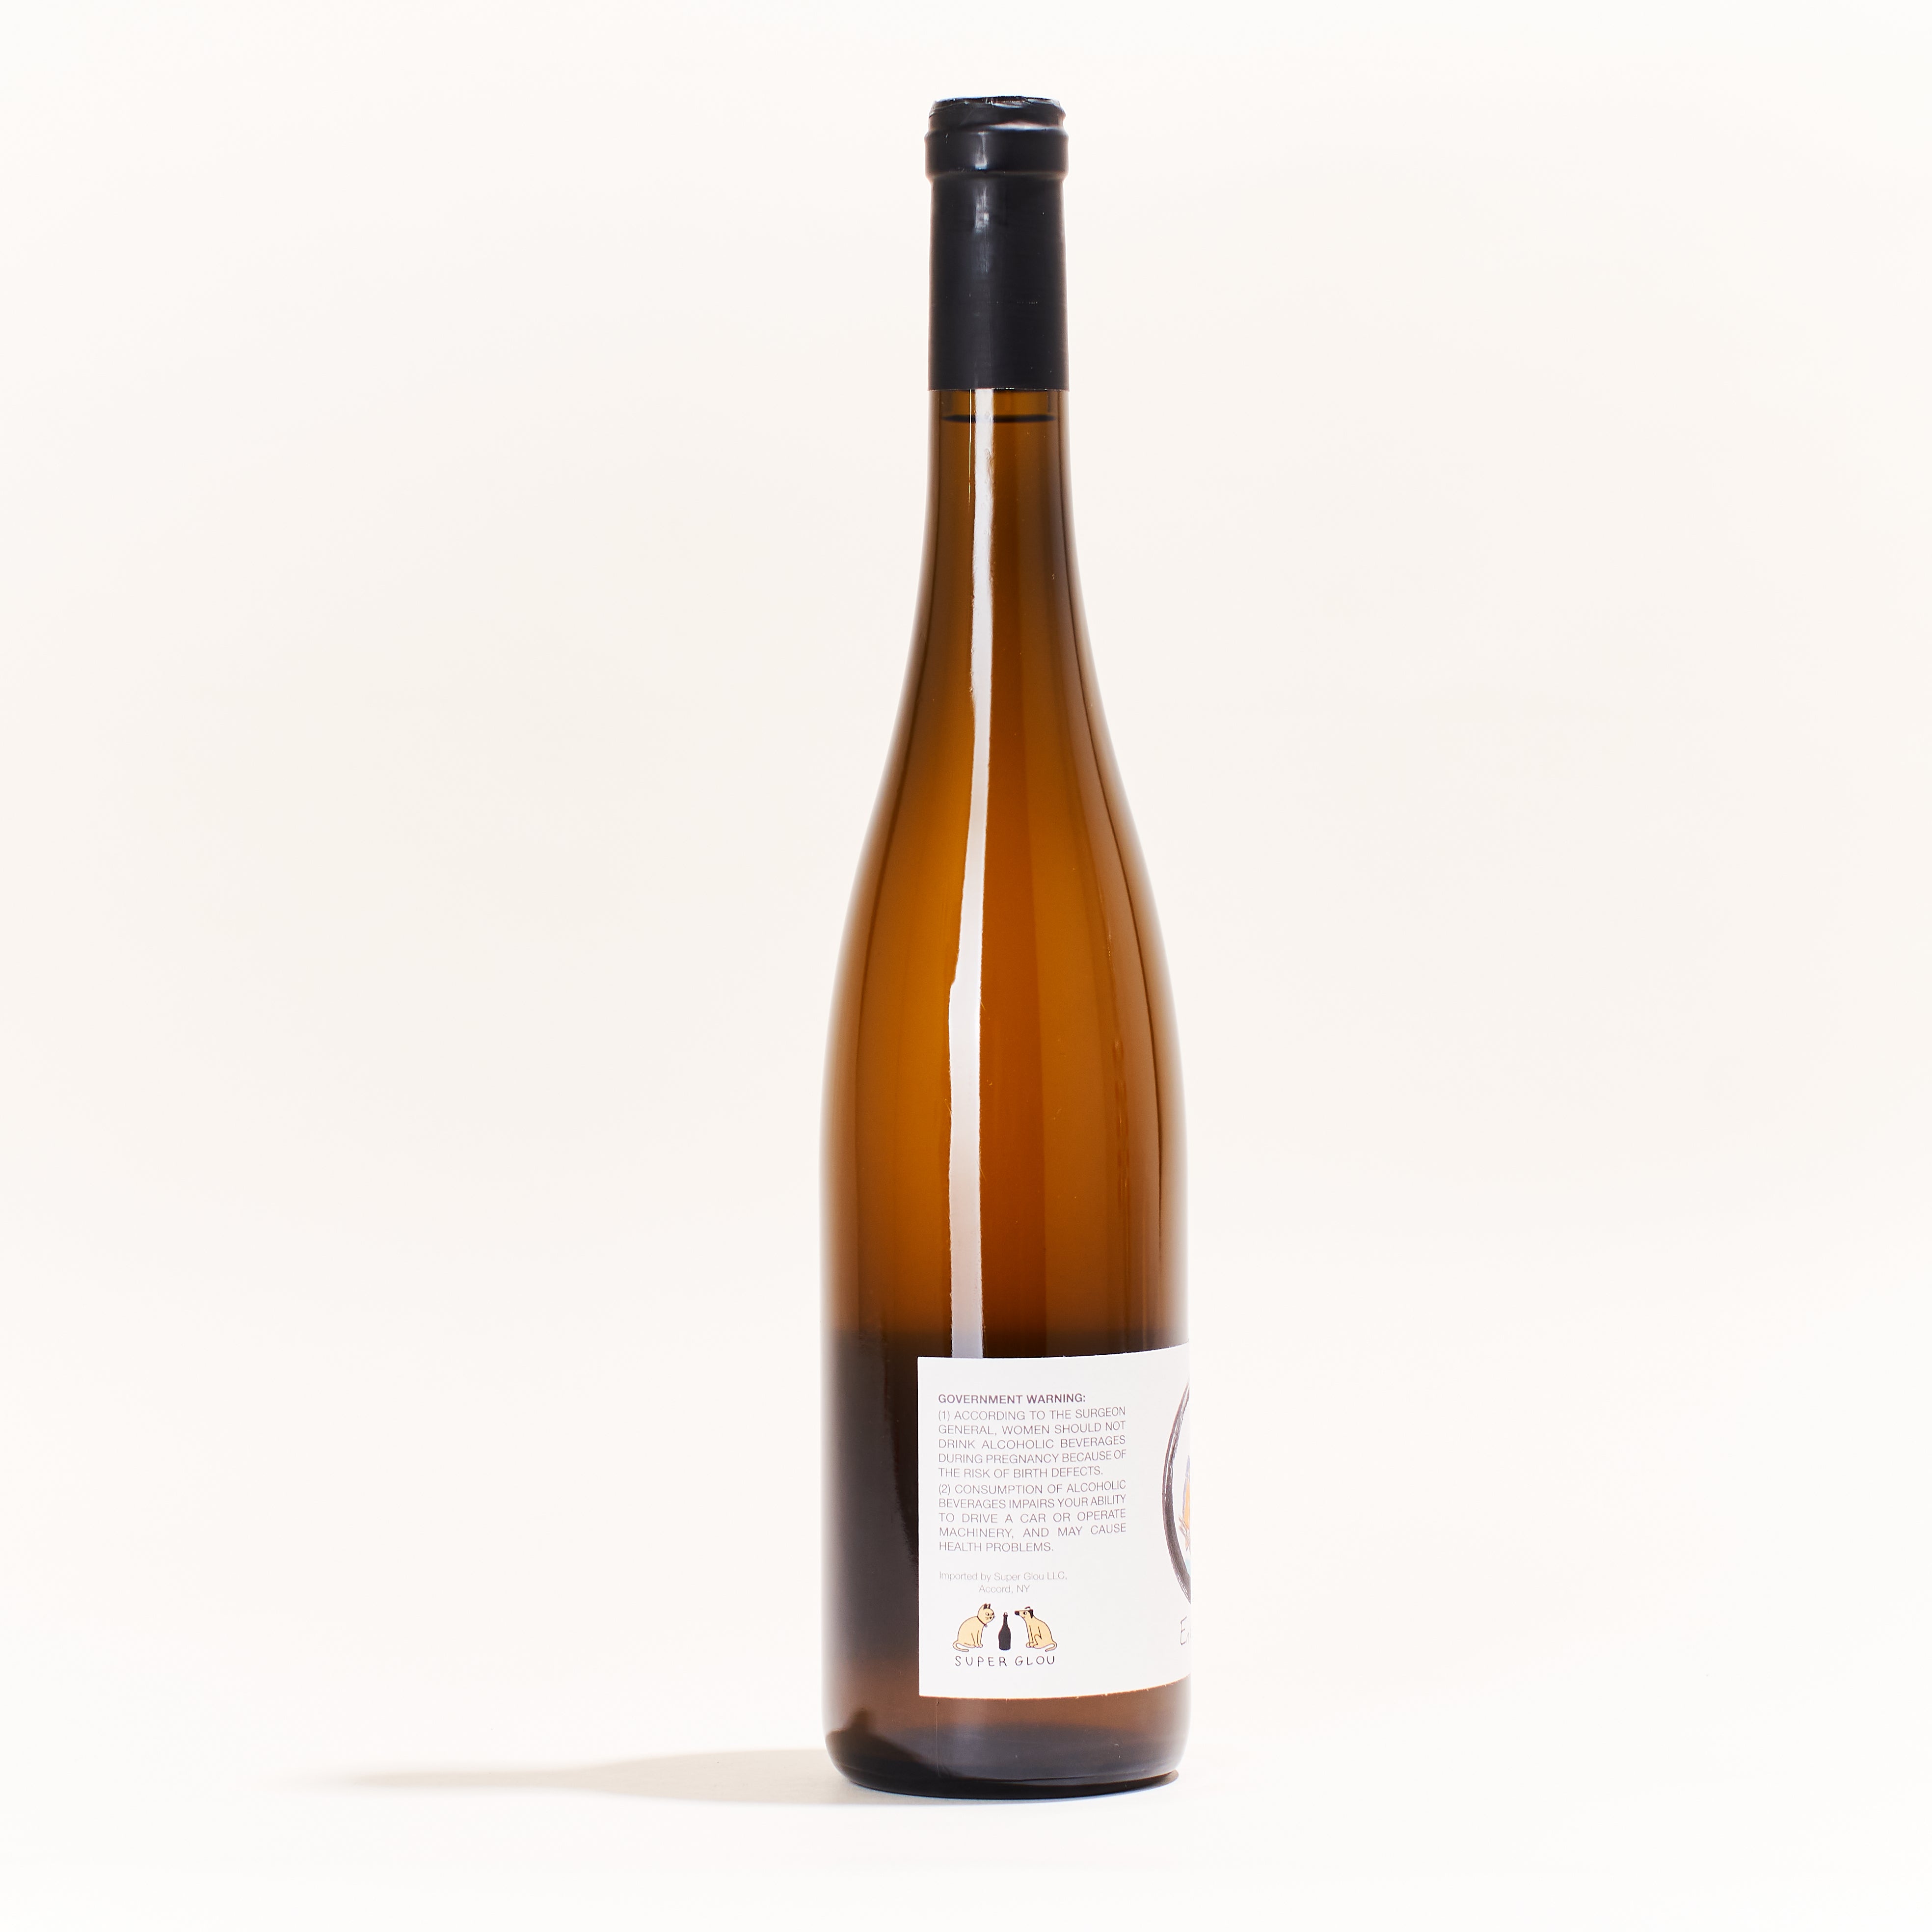 Lindenlaub En Équilibre Riesling natural white wine Alsace France side label